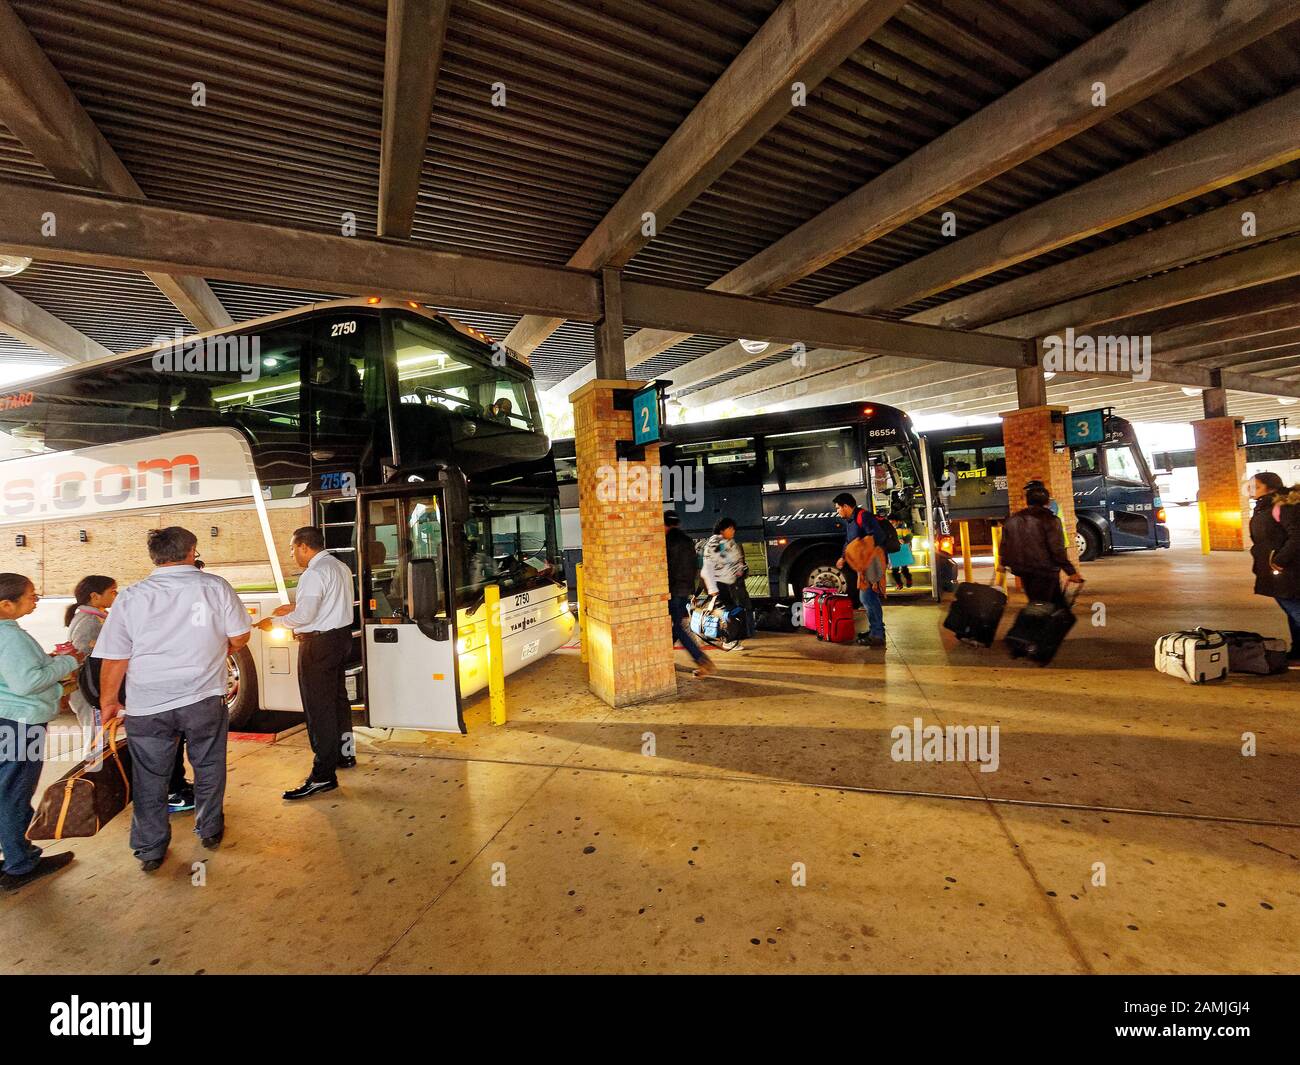 Persone a bordo degli autobus al terminal degli autobus la Plaza a Brownsville, Texas. Al confine tra Messico e Stati Uniti. L'autobus è un modo economico per viaggiare per le famiglie. Foto Stock